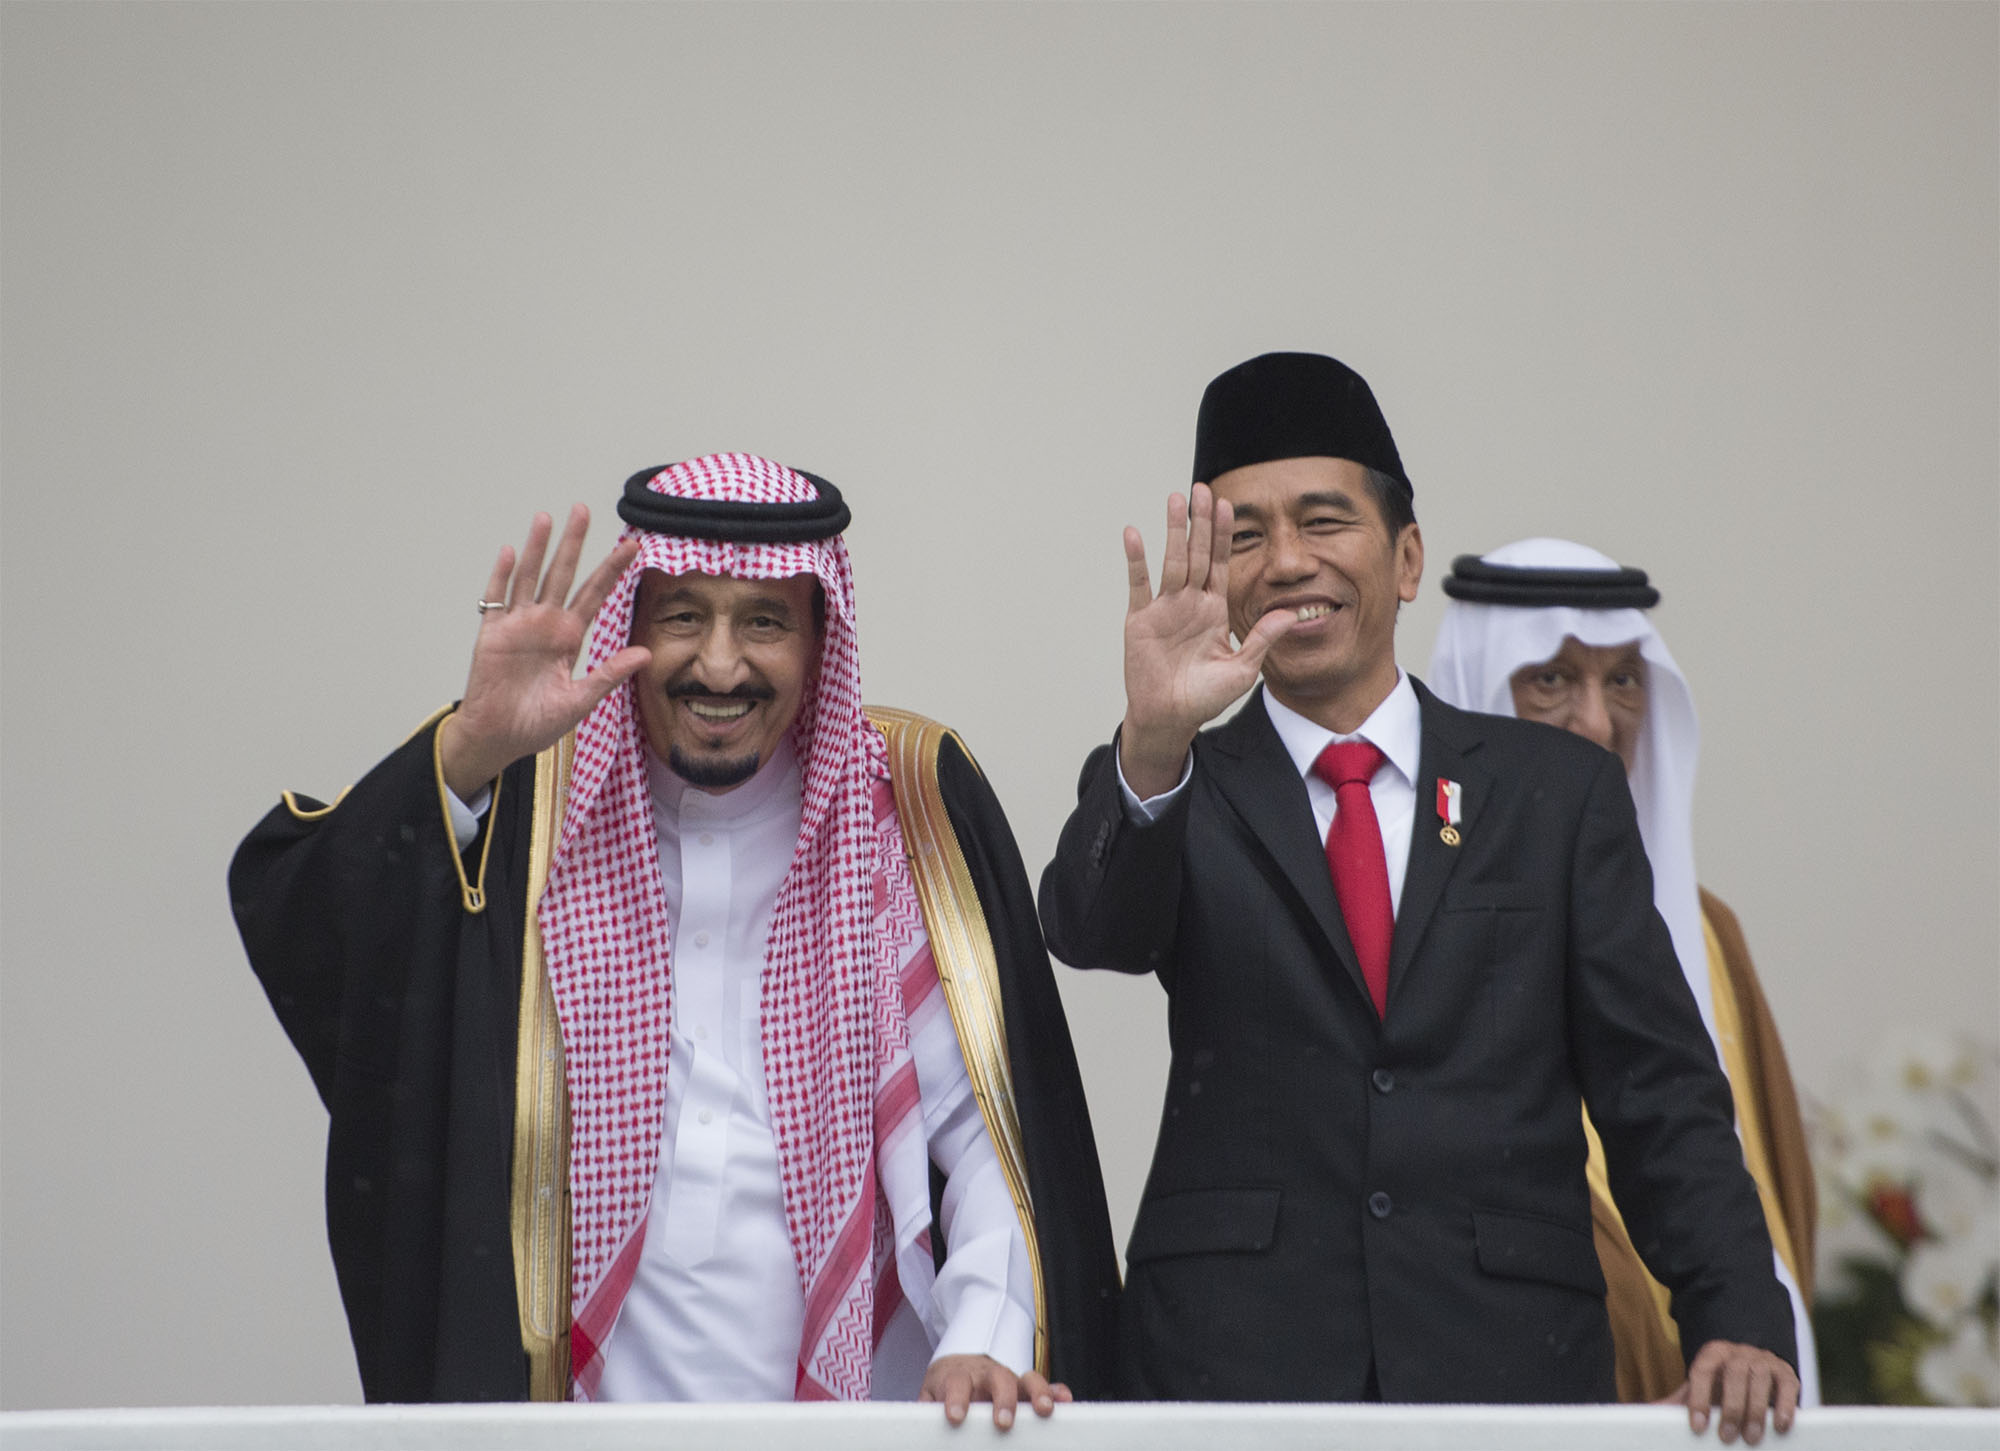 صحف إندونيسية: دور رائد للملك سلمان في خدمة قضايا العالم الإسلامي والدفاع عنها